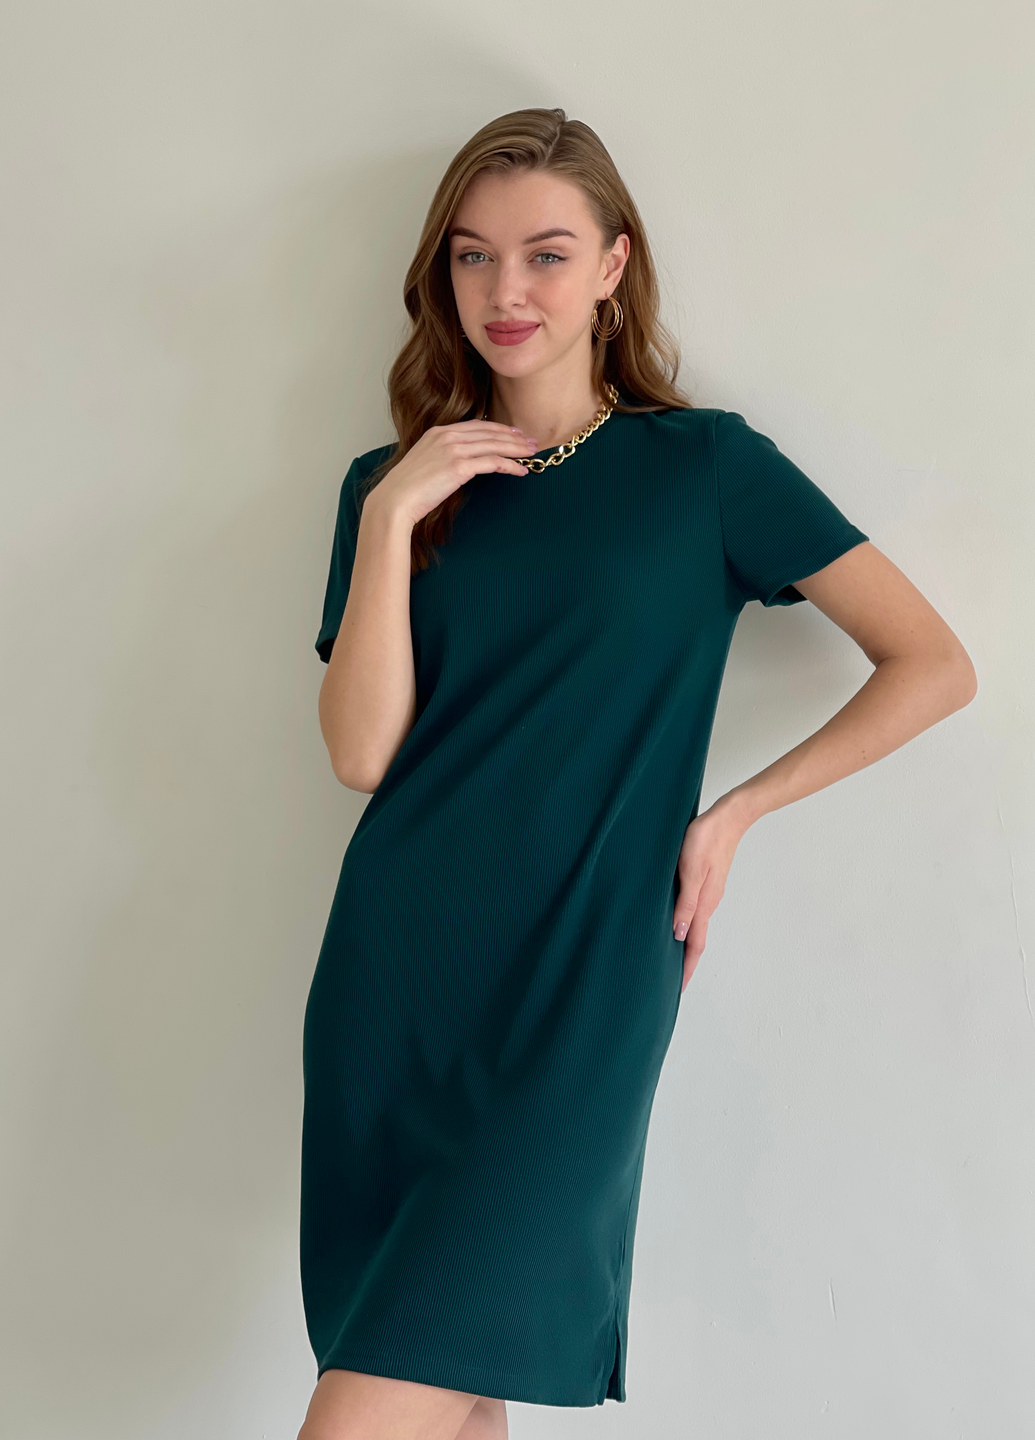 Купить Платье-футболка до колена в рубчик зеленое Merlini Милан 700000152 размер 42-44 (S-M) в интернет-магазине